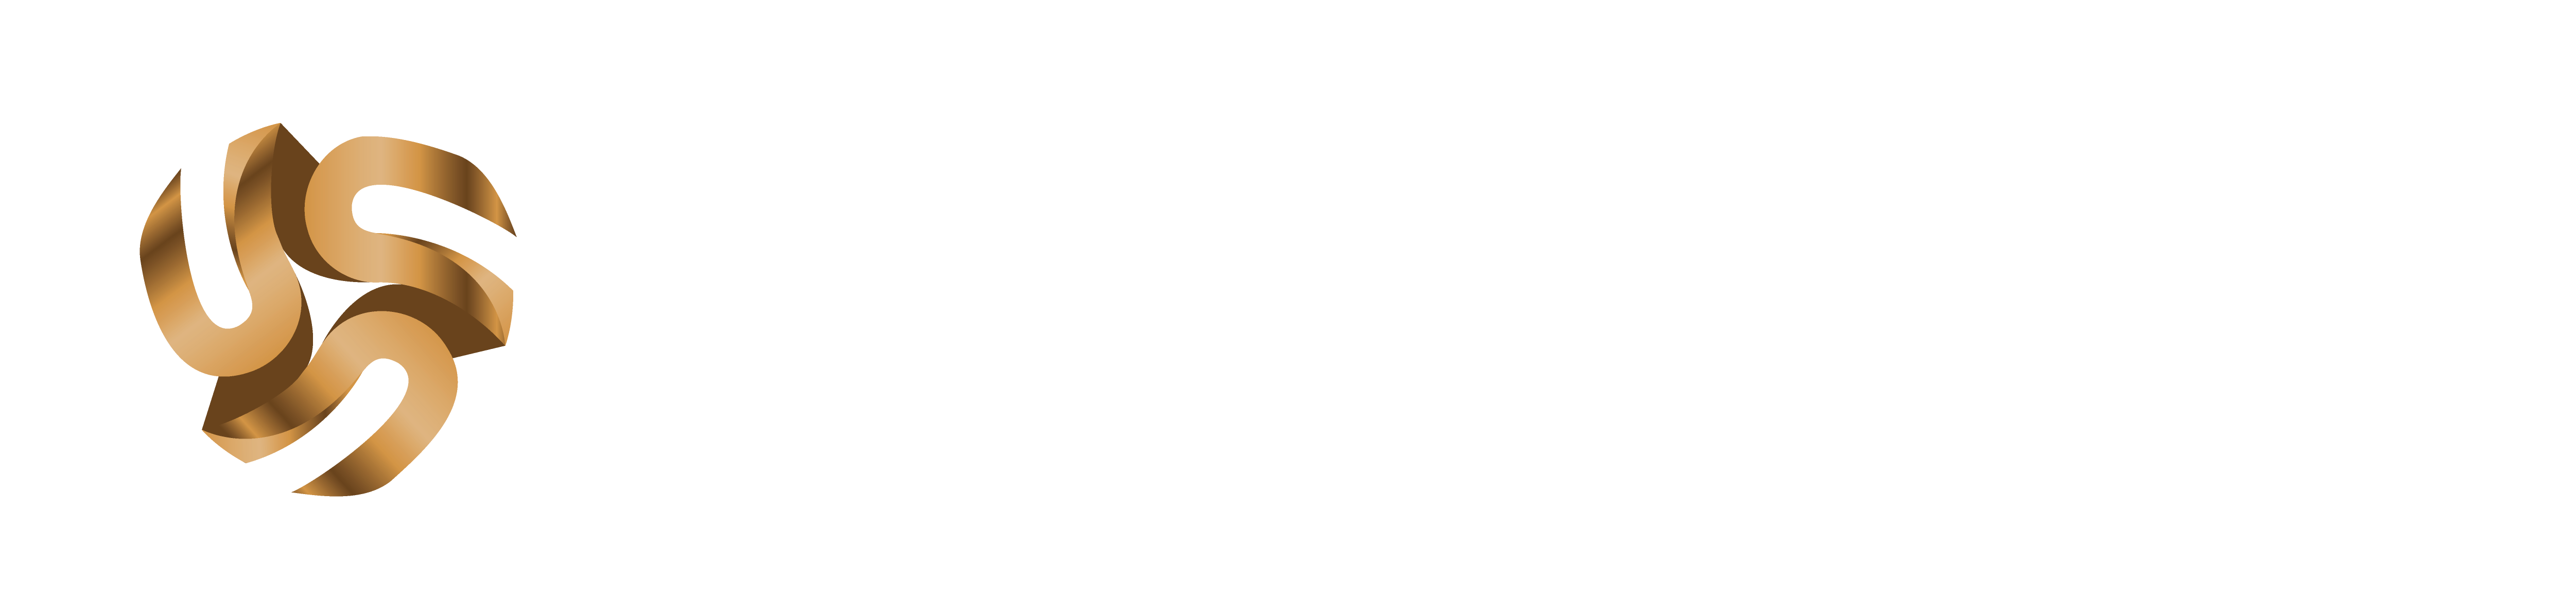 UFFILIATES - Company logo